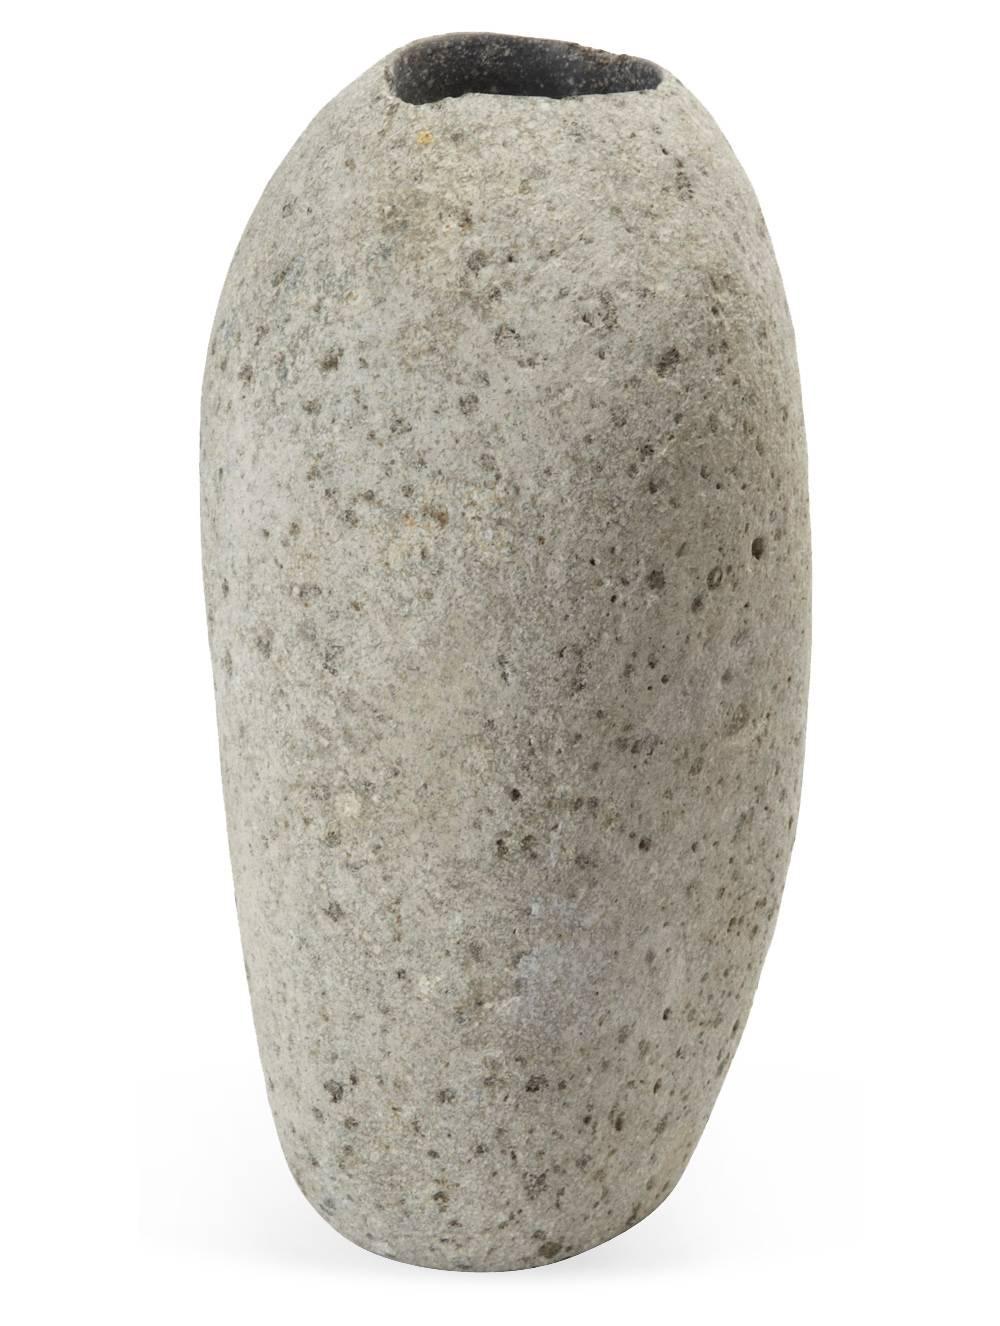 Organischer Votiv- oder Teelichthalter aus Stein. Natürliche Form, unpoliert.